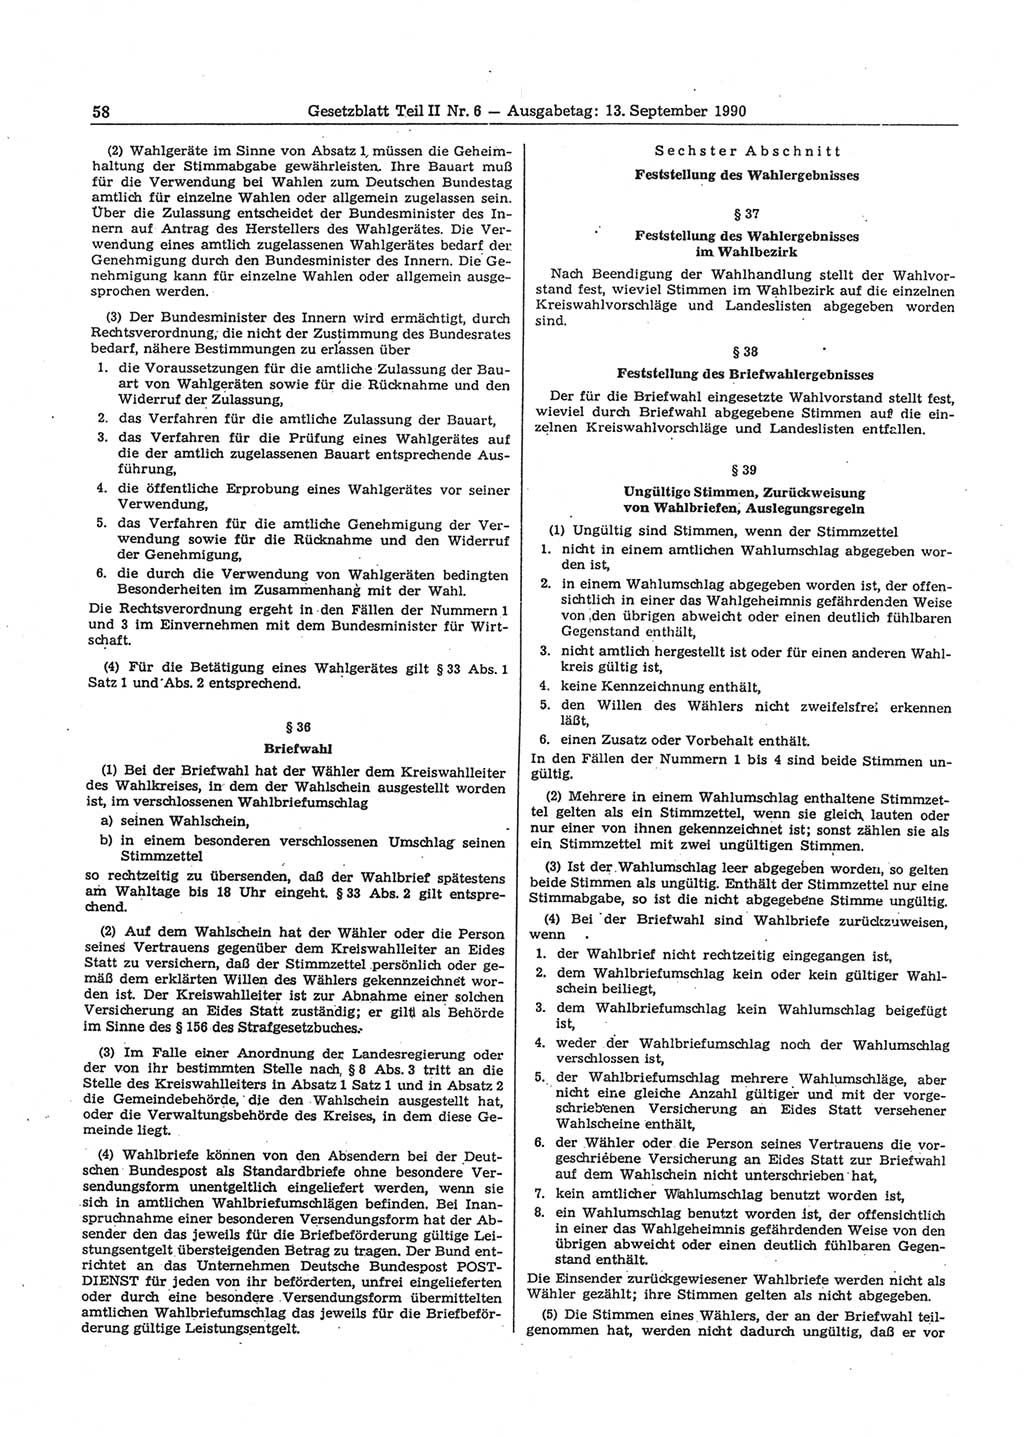 Gesetzblatt (GBl.) der Deutschen Demokratischen Republik (DDR) Teil ⅠⅠ 1990, Seite 58 (GBl. DDR ⅠⅠ 1990, S. 58)